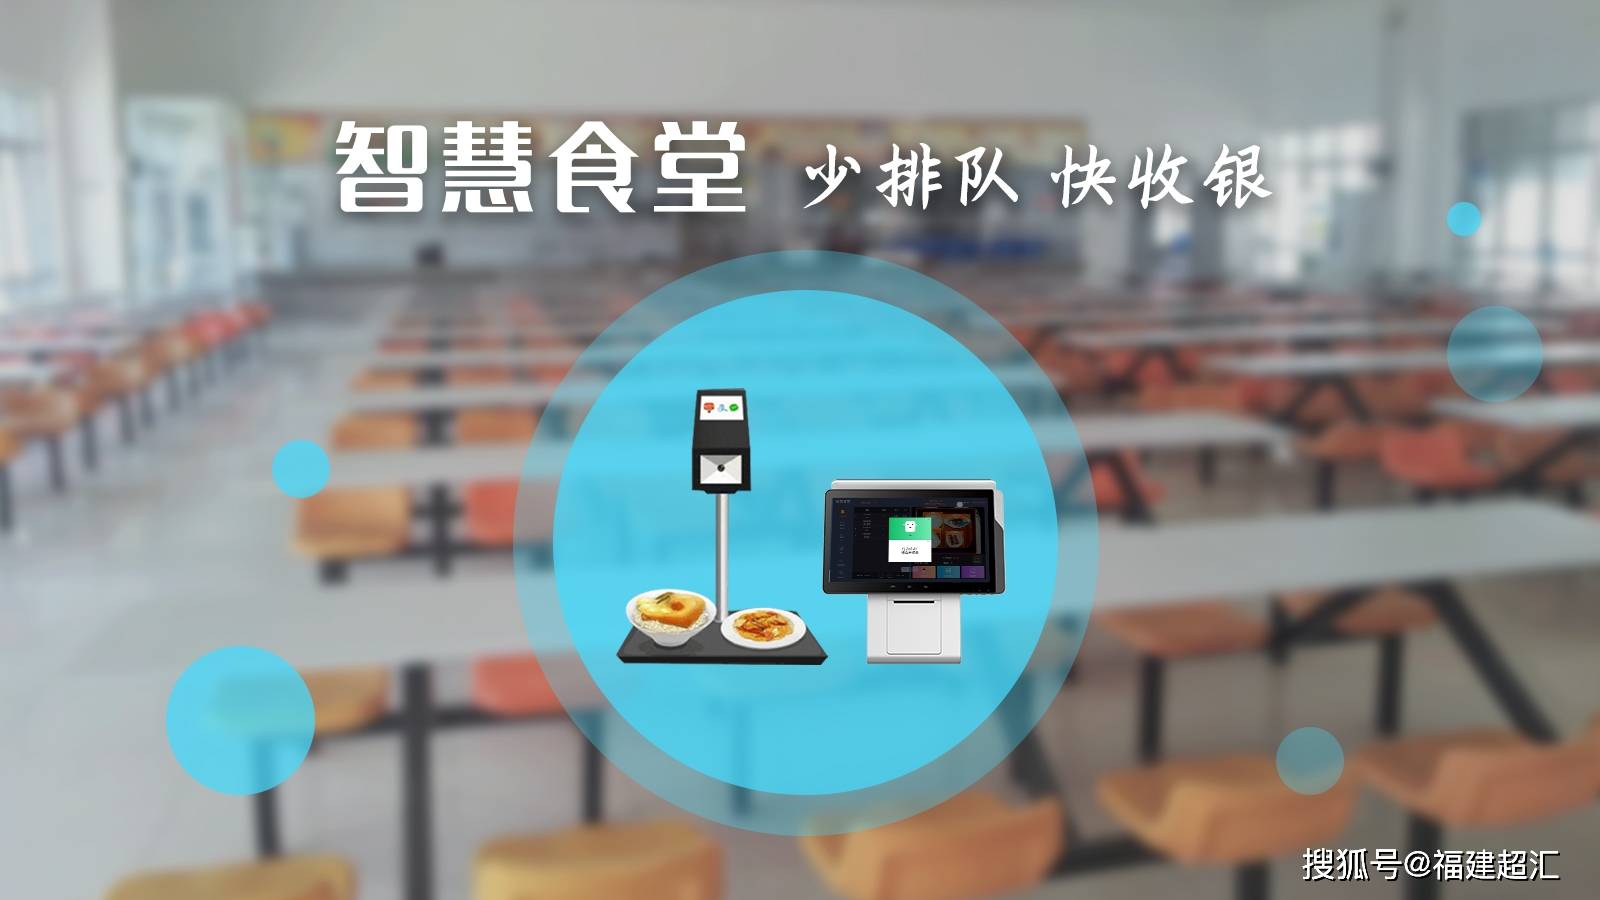 微信外卖订餐系统_食堂微信订餐系统_微信外卖订餐系统排名